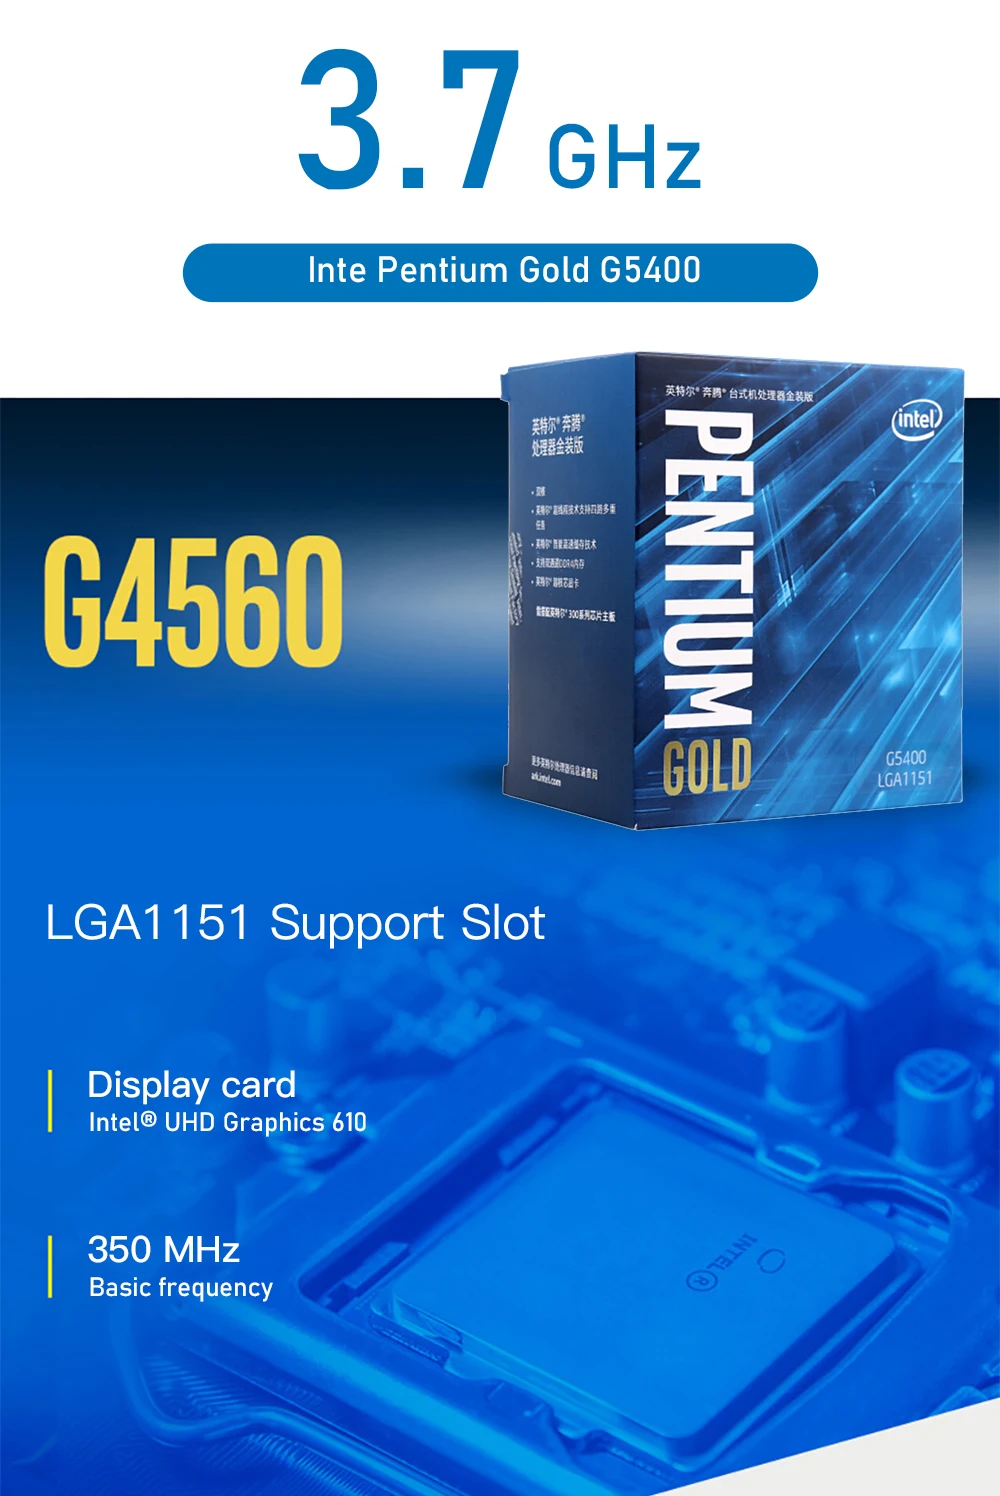 Intel Pentium Gold G5400 настольный процессор 2 ядра 3,7 ГГц LGA1151 300 серия 54 Вт/58 Вт BX80684G5400